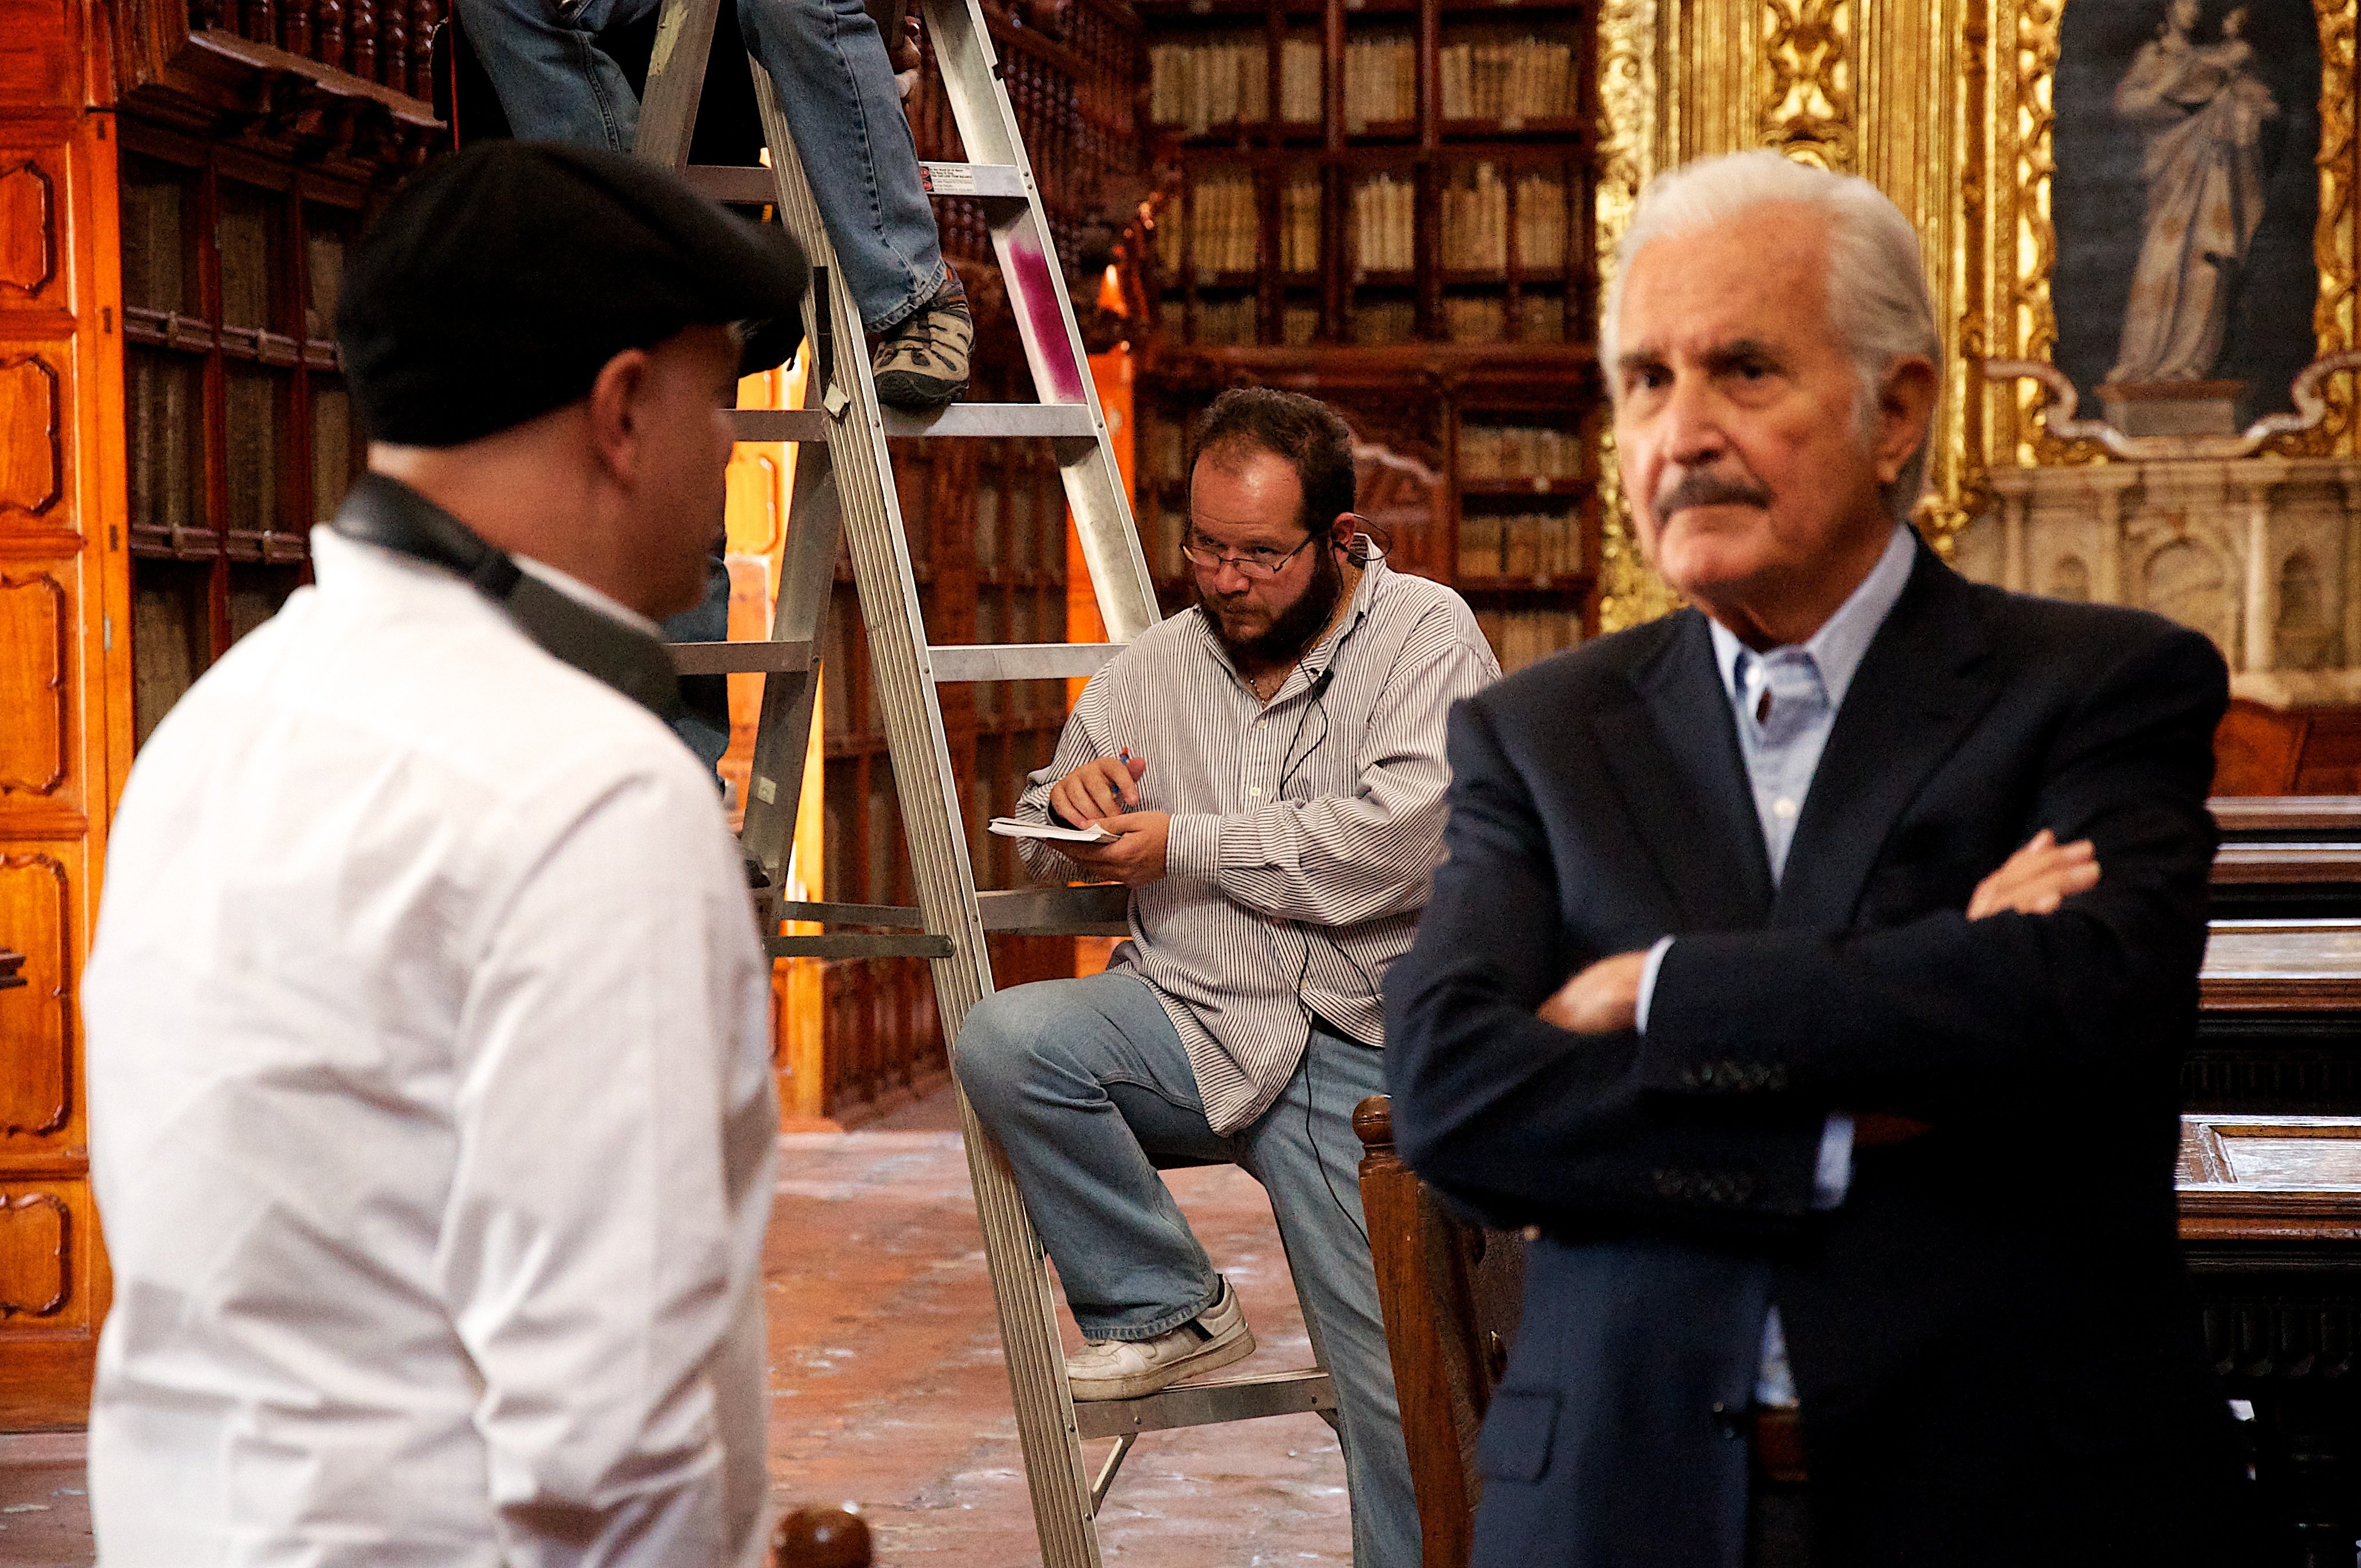 Carlos Fuentes, Alejandro Springall and Arturo Antonio Tay Balderas in Hace 150 años, Crónica de la Batalla de Puebla por Carlos Fuentes (2012)